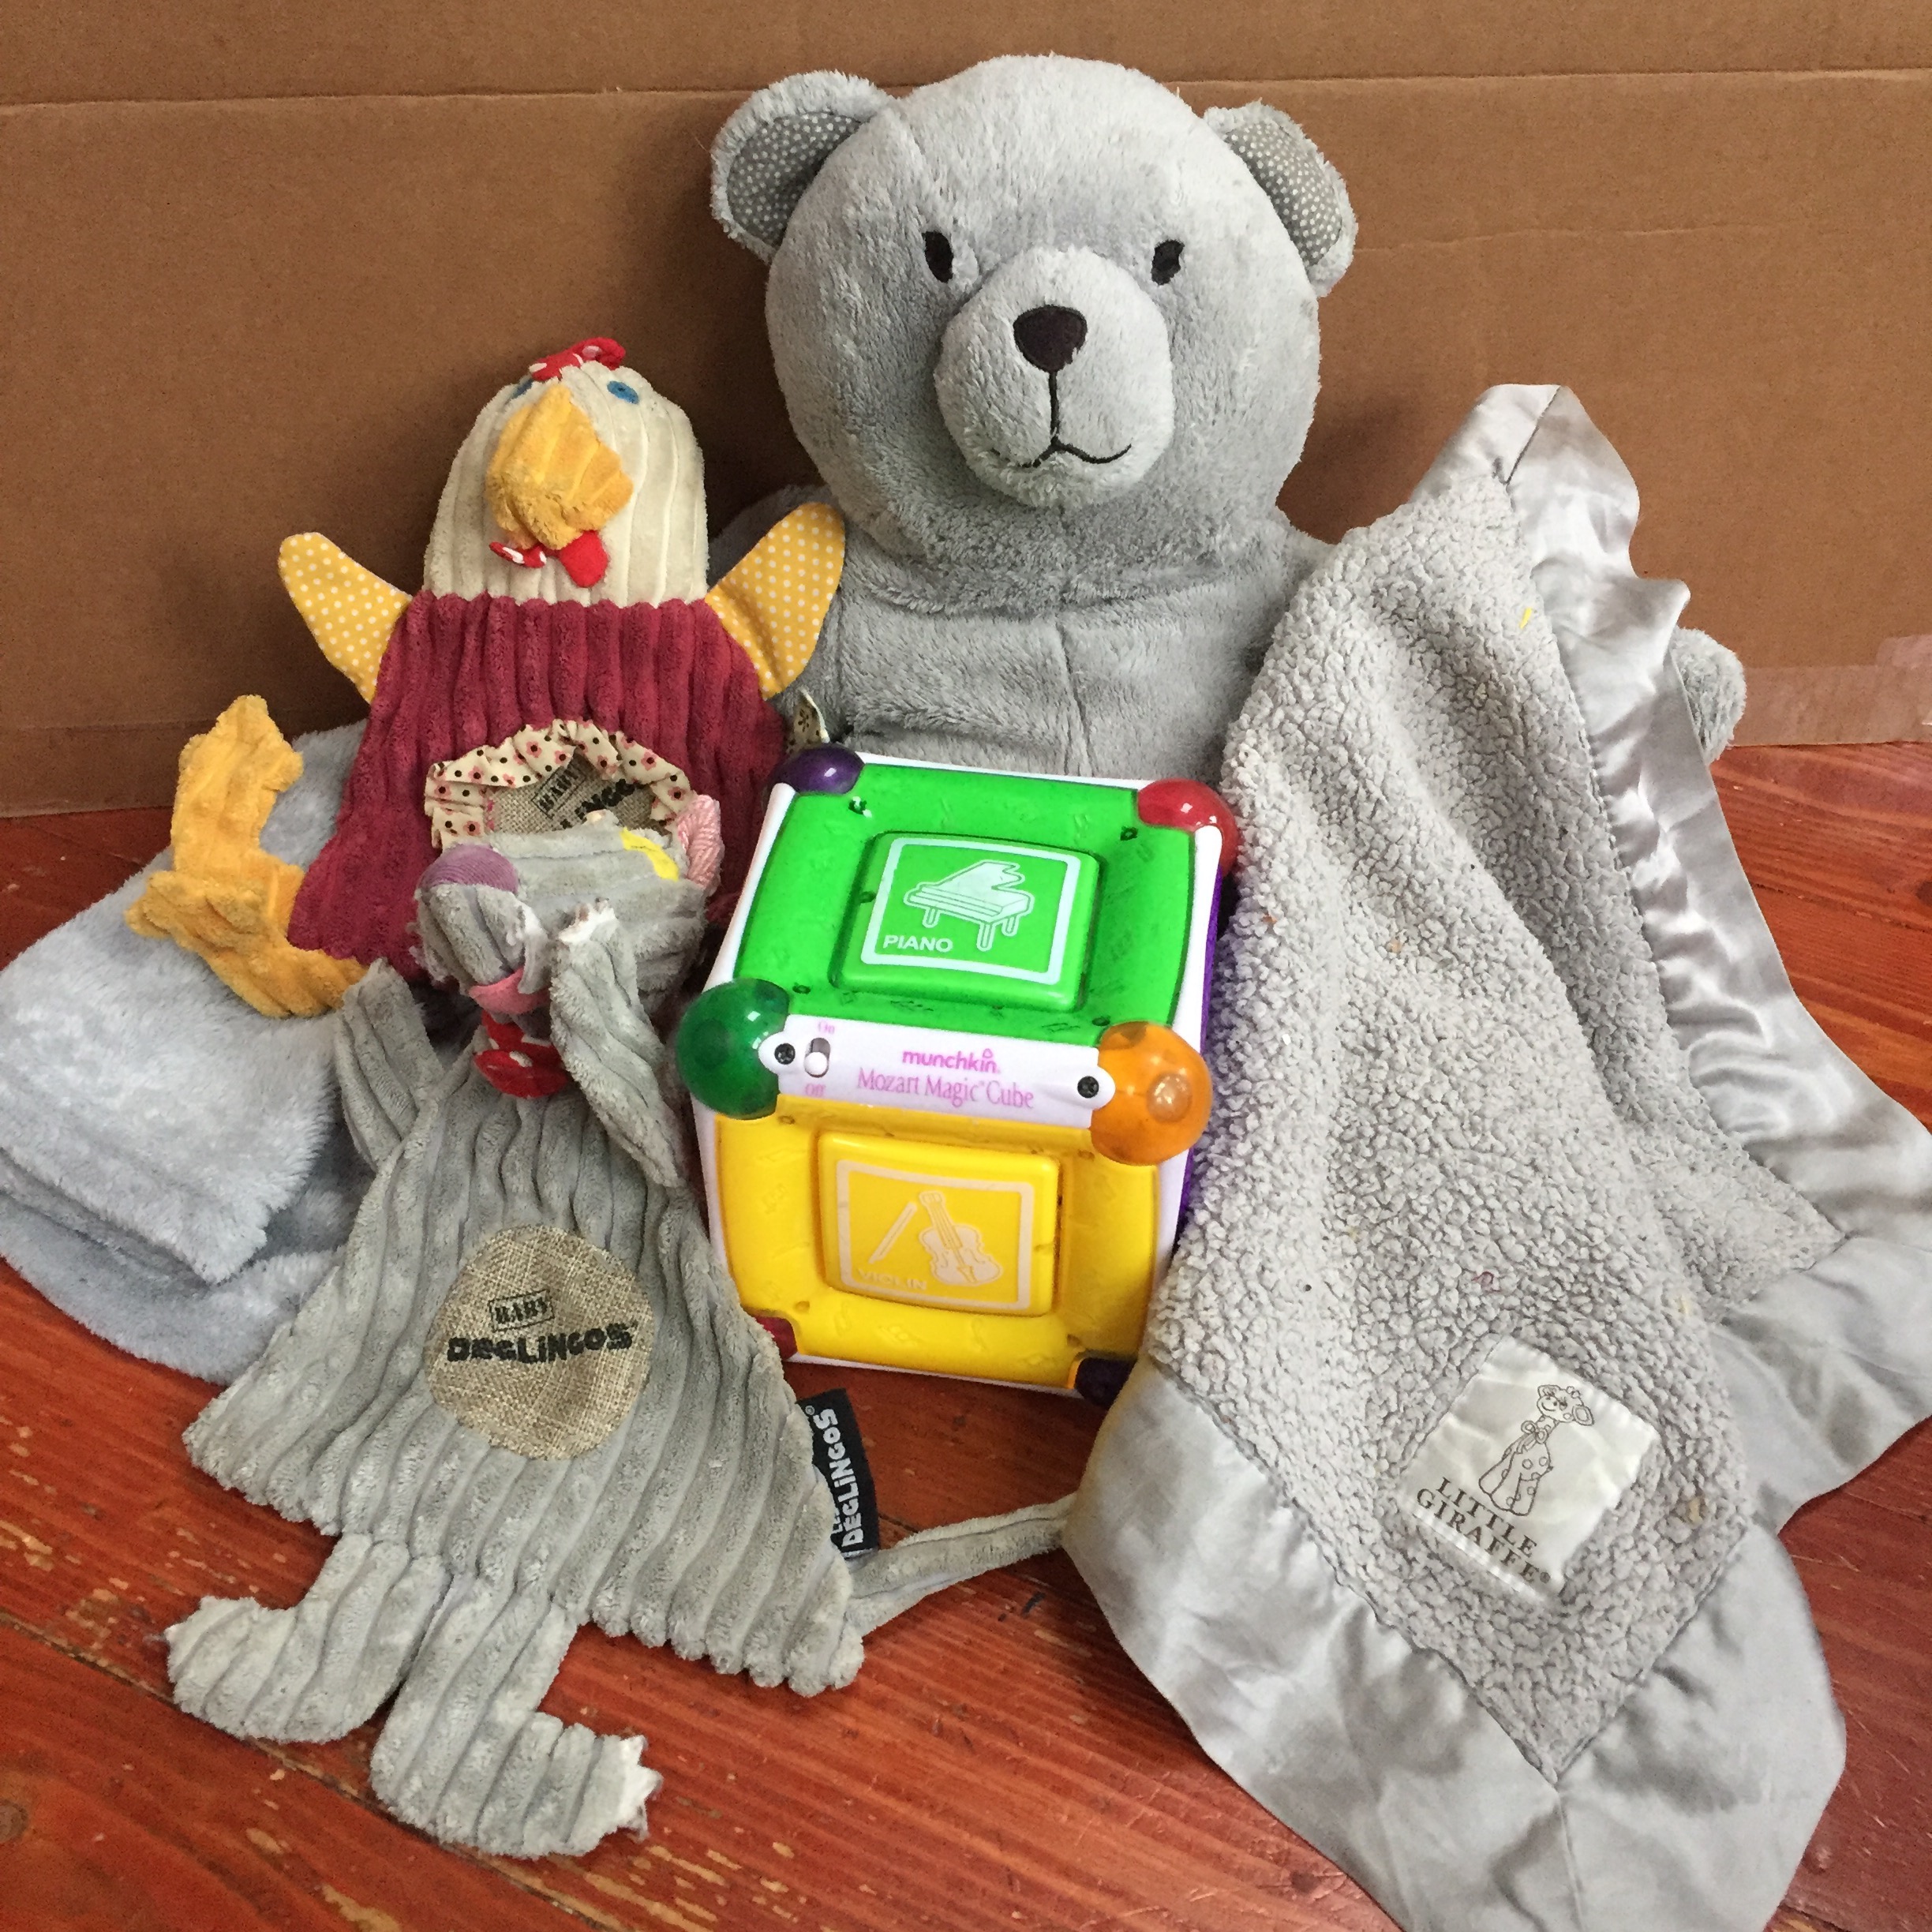 Infant Gift Guide Over $20 Deglingos Baby Animals, Mozart Music Cube, Blanket Bear Buddy, Little Giraffe gray baby blanket